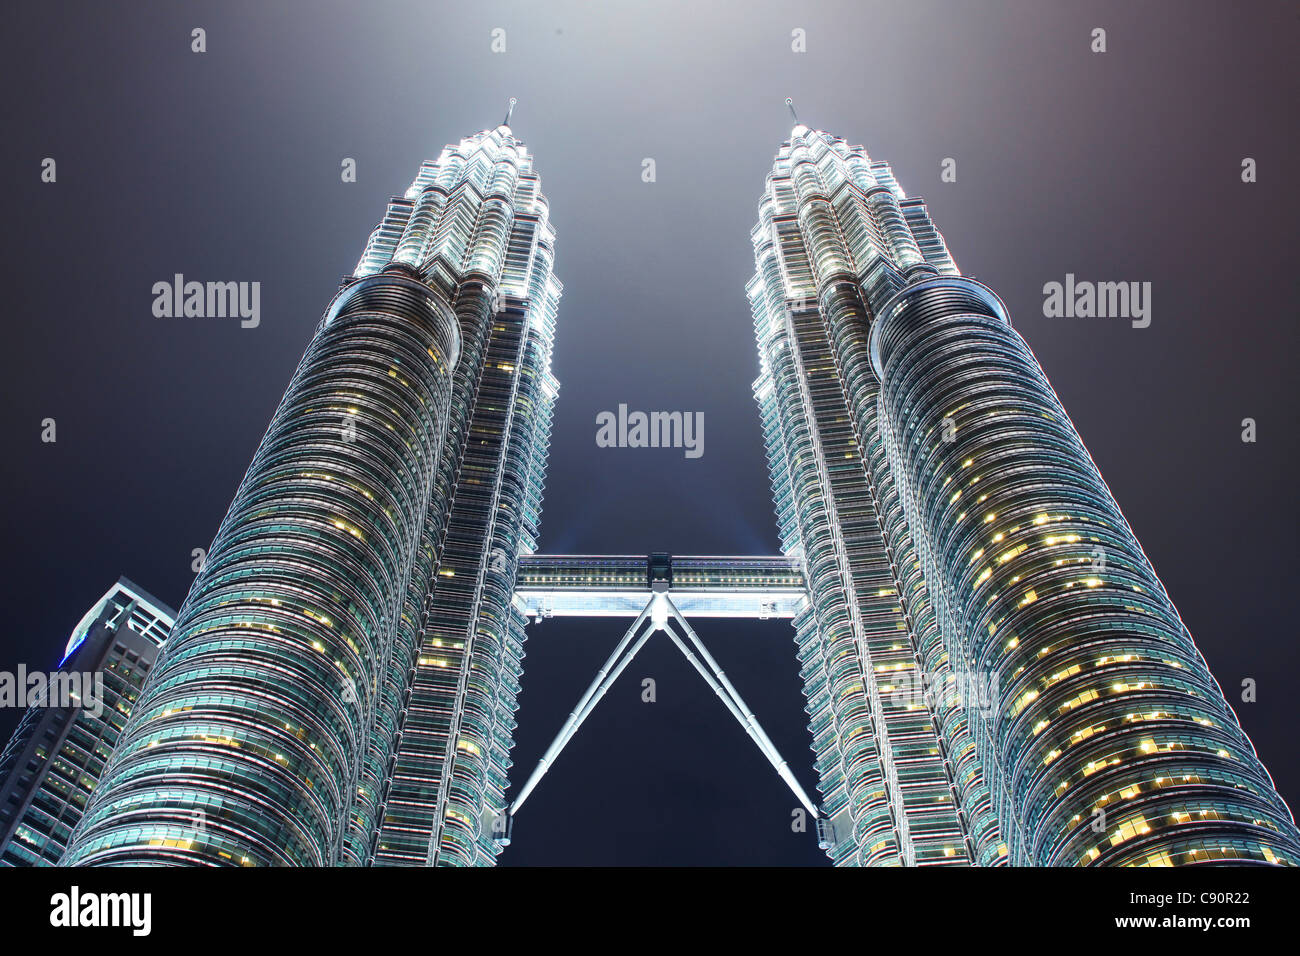 Petronas Towers at night, 452 Meters high, architect Cesar Antonio Pelli, Kuala Lumpur, Malaysia, Asia Stock Photo